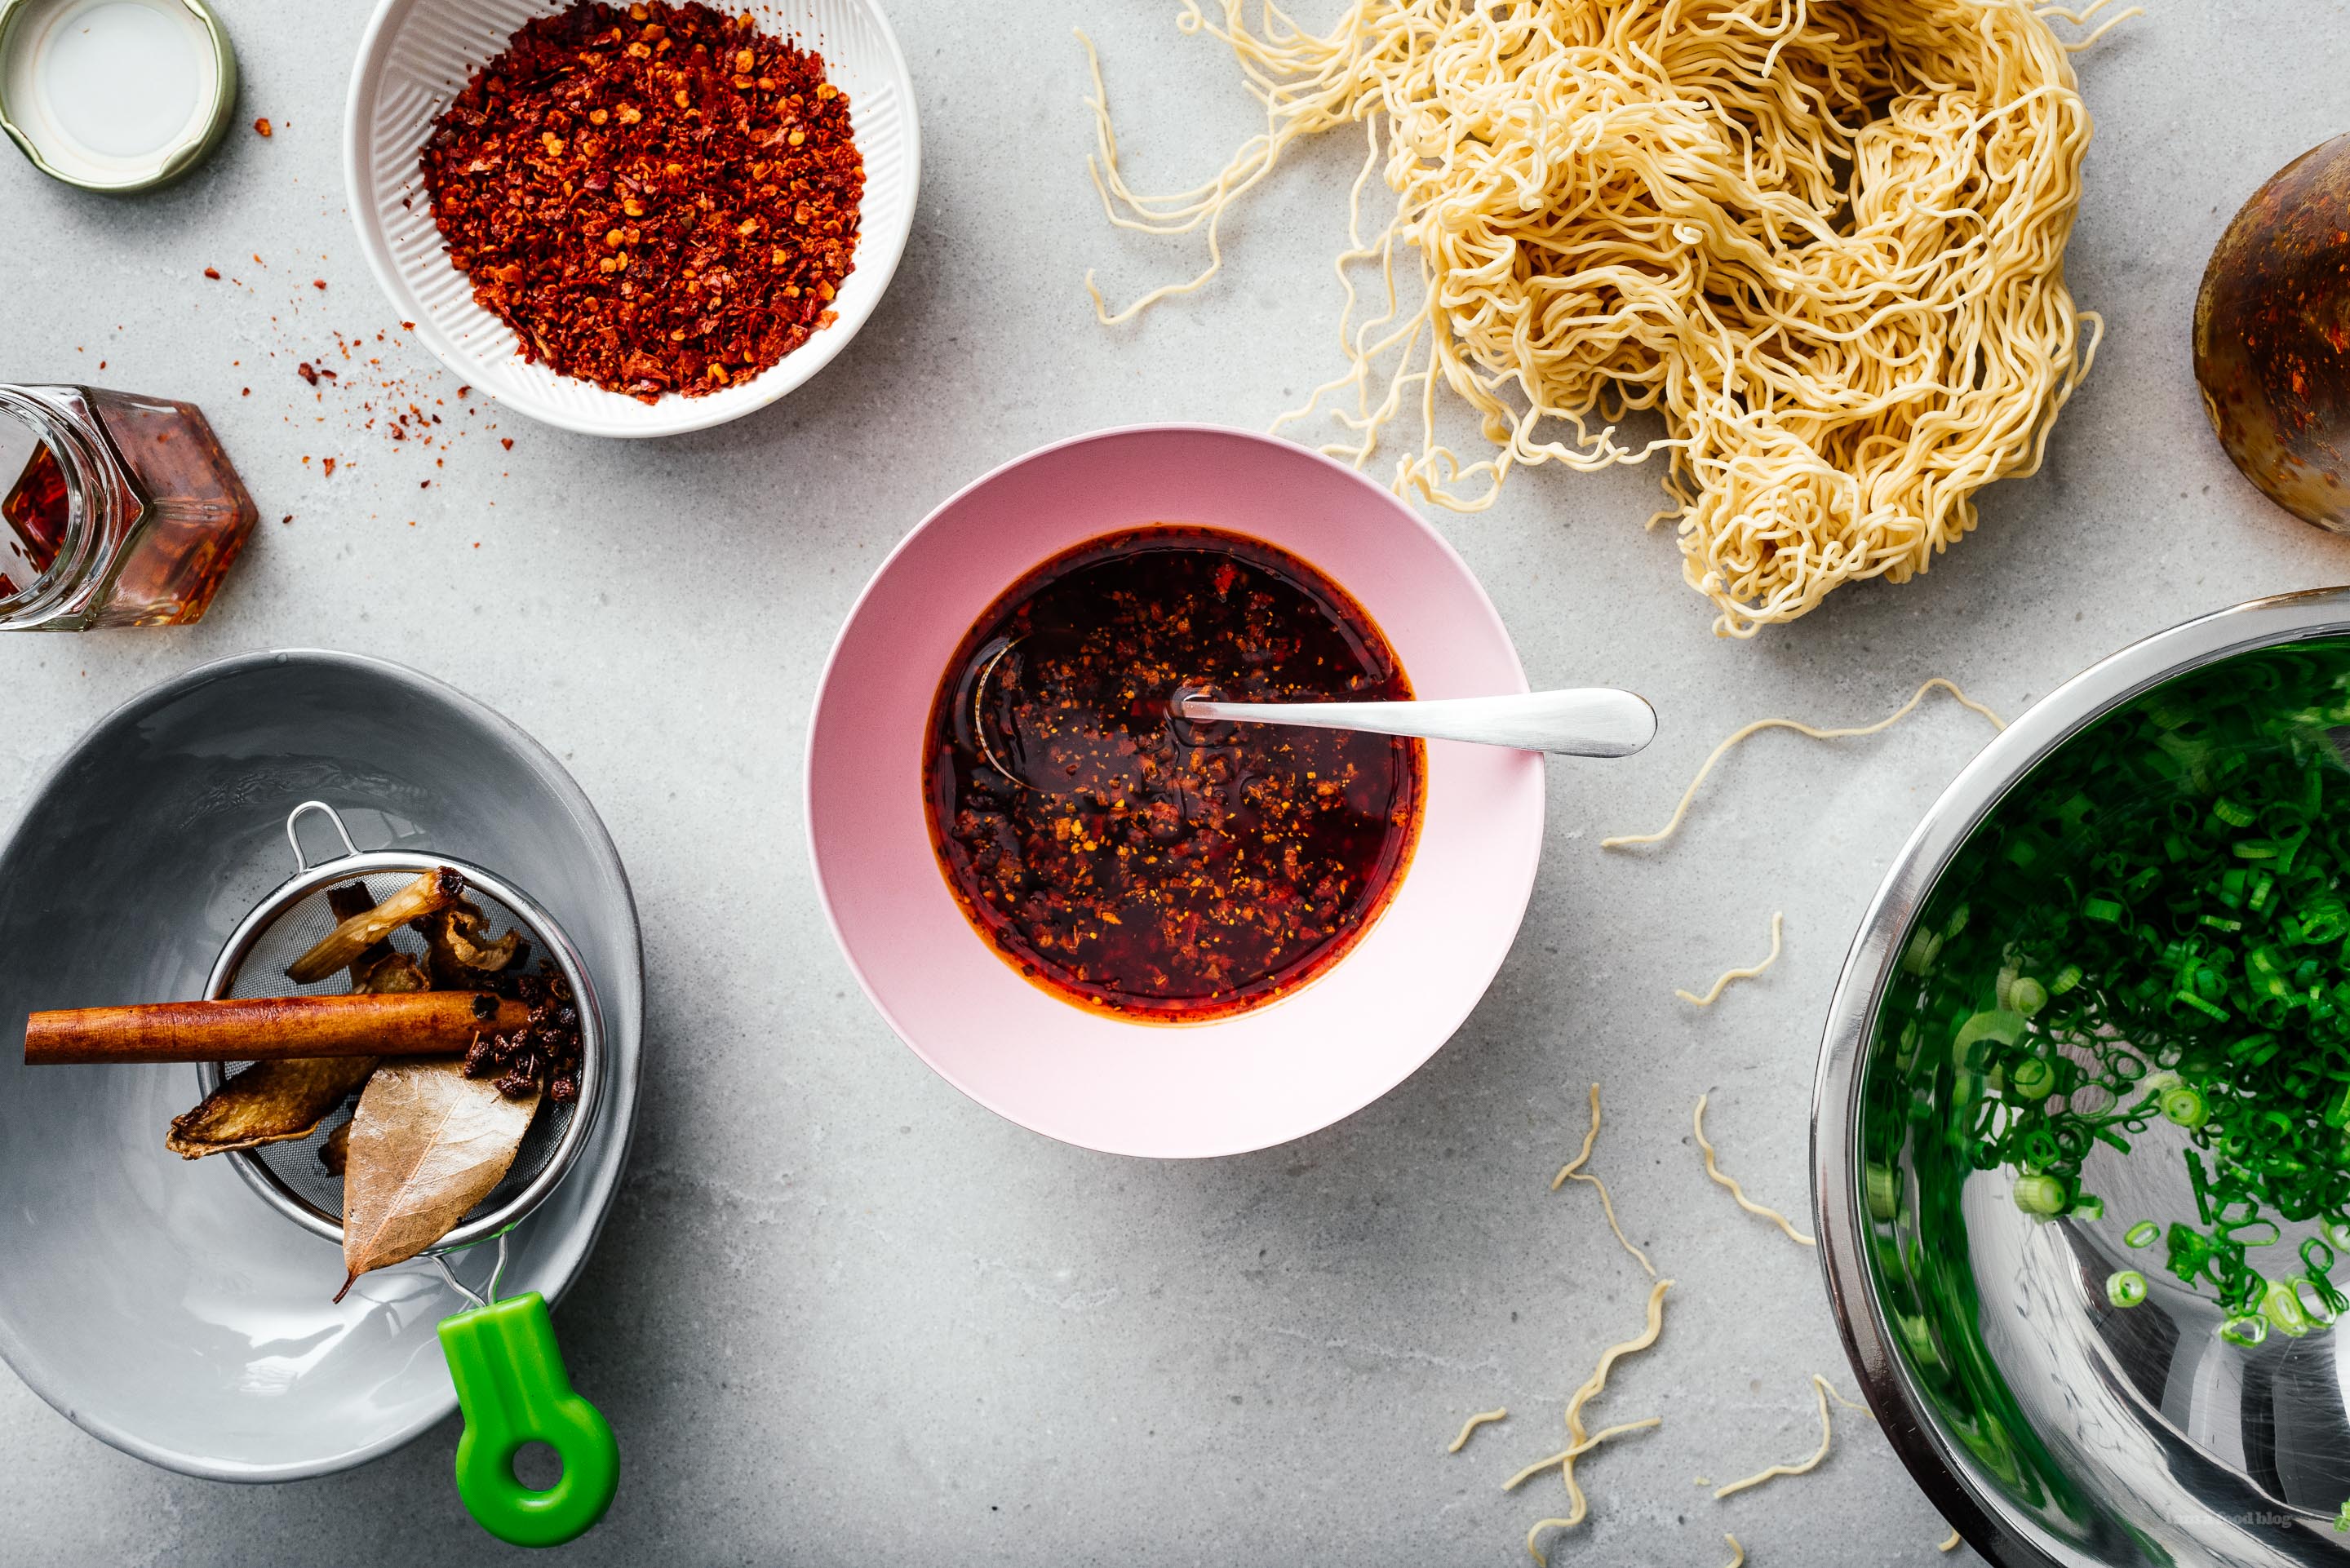 ¿Quieres saber cómo hacer auténtico aceite de chile chino en casa?  ¡Prueba esta receta!  El aceite de chile es increíble con arroz, fideos, wonton, ensaladas.  Úselo como ingrediente en recetas o como salsa.  www.iamafoodblog.com #chilioil #chinesechilioil #recipes #fácil #hecho en casa #sichuan"